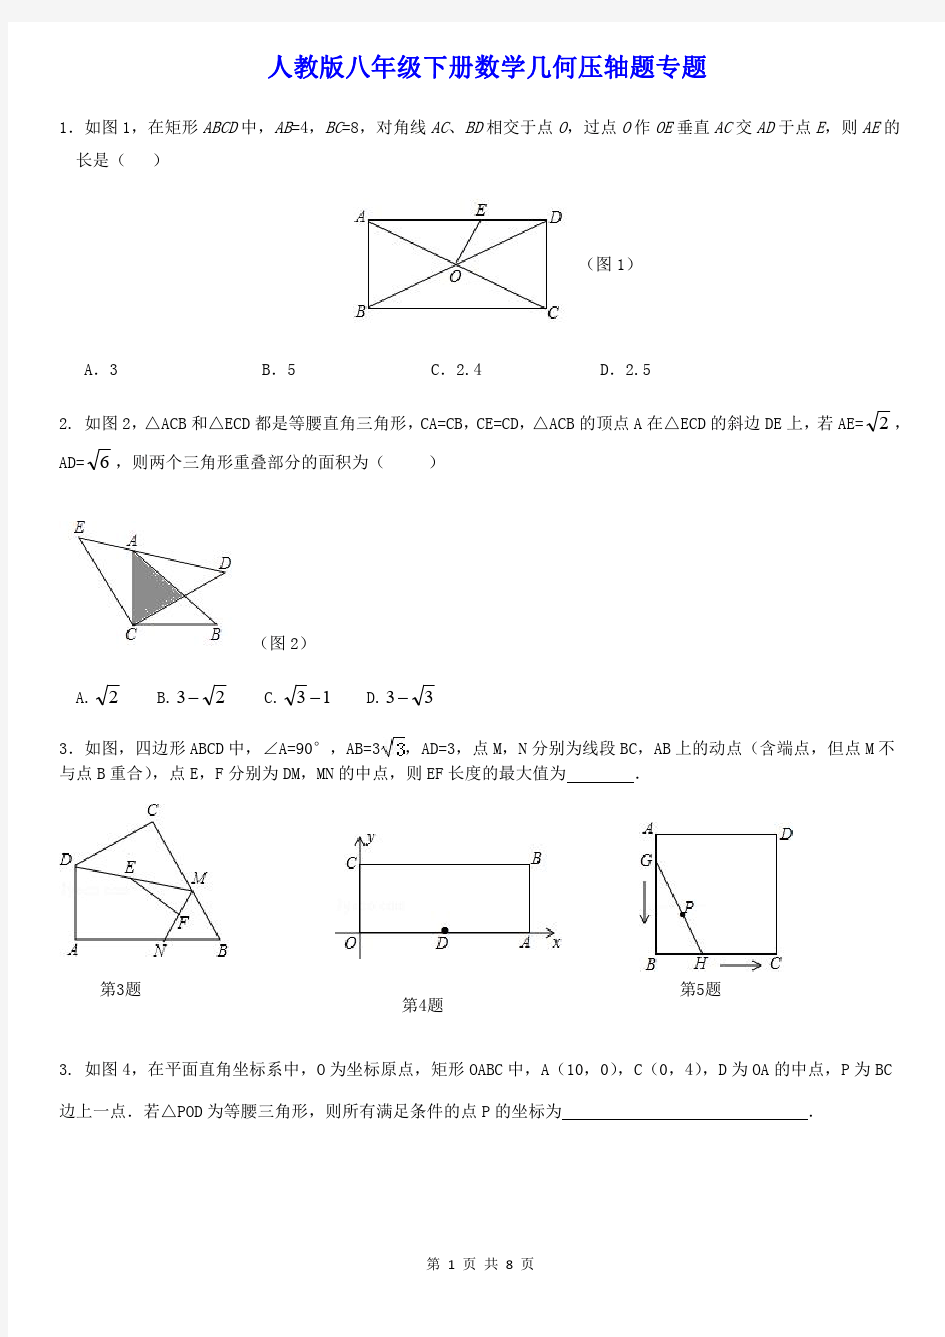 人教版八年级下册数学几何压轴题专题答题版(无答案)